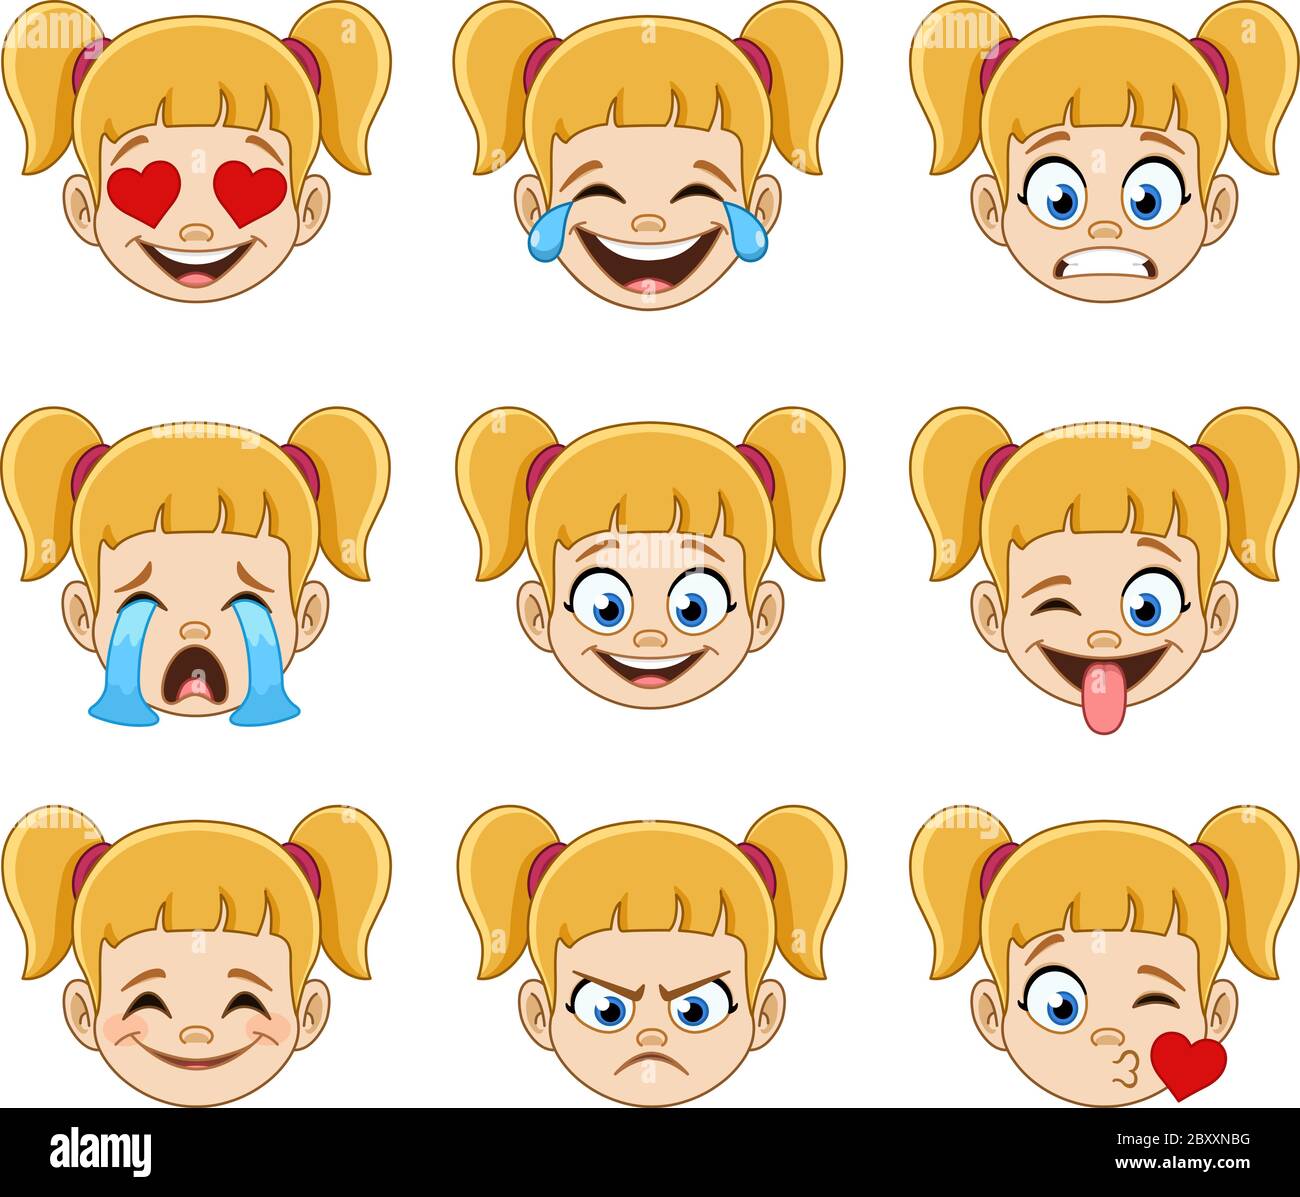 Emoji visage expressions collection d'une jeune fille blonde avec des queues de cheval et des yeux bleus Illustration de Vecteur